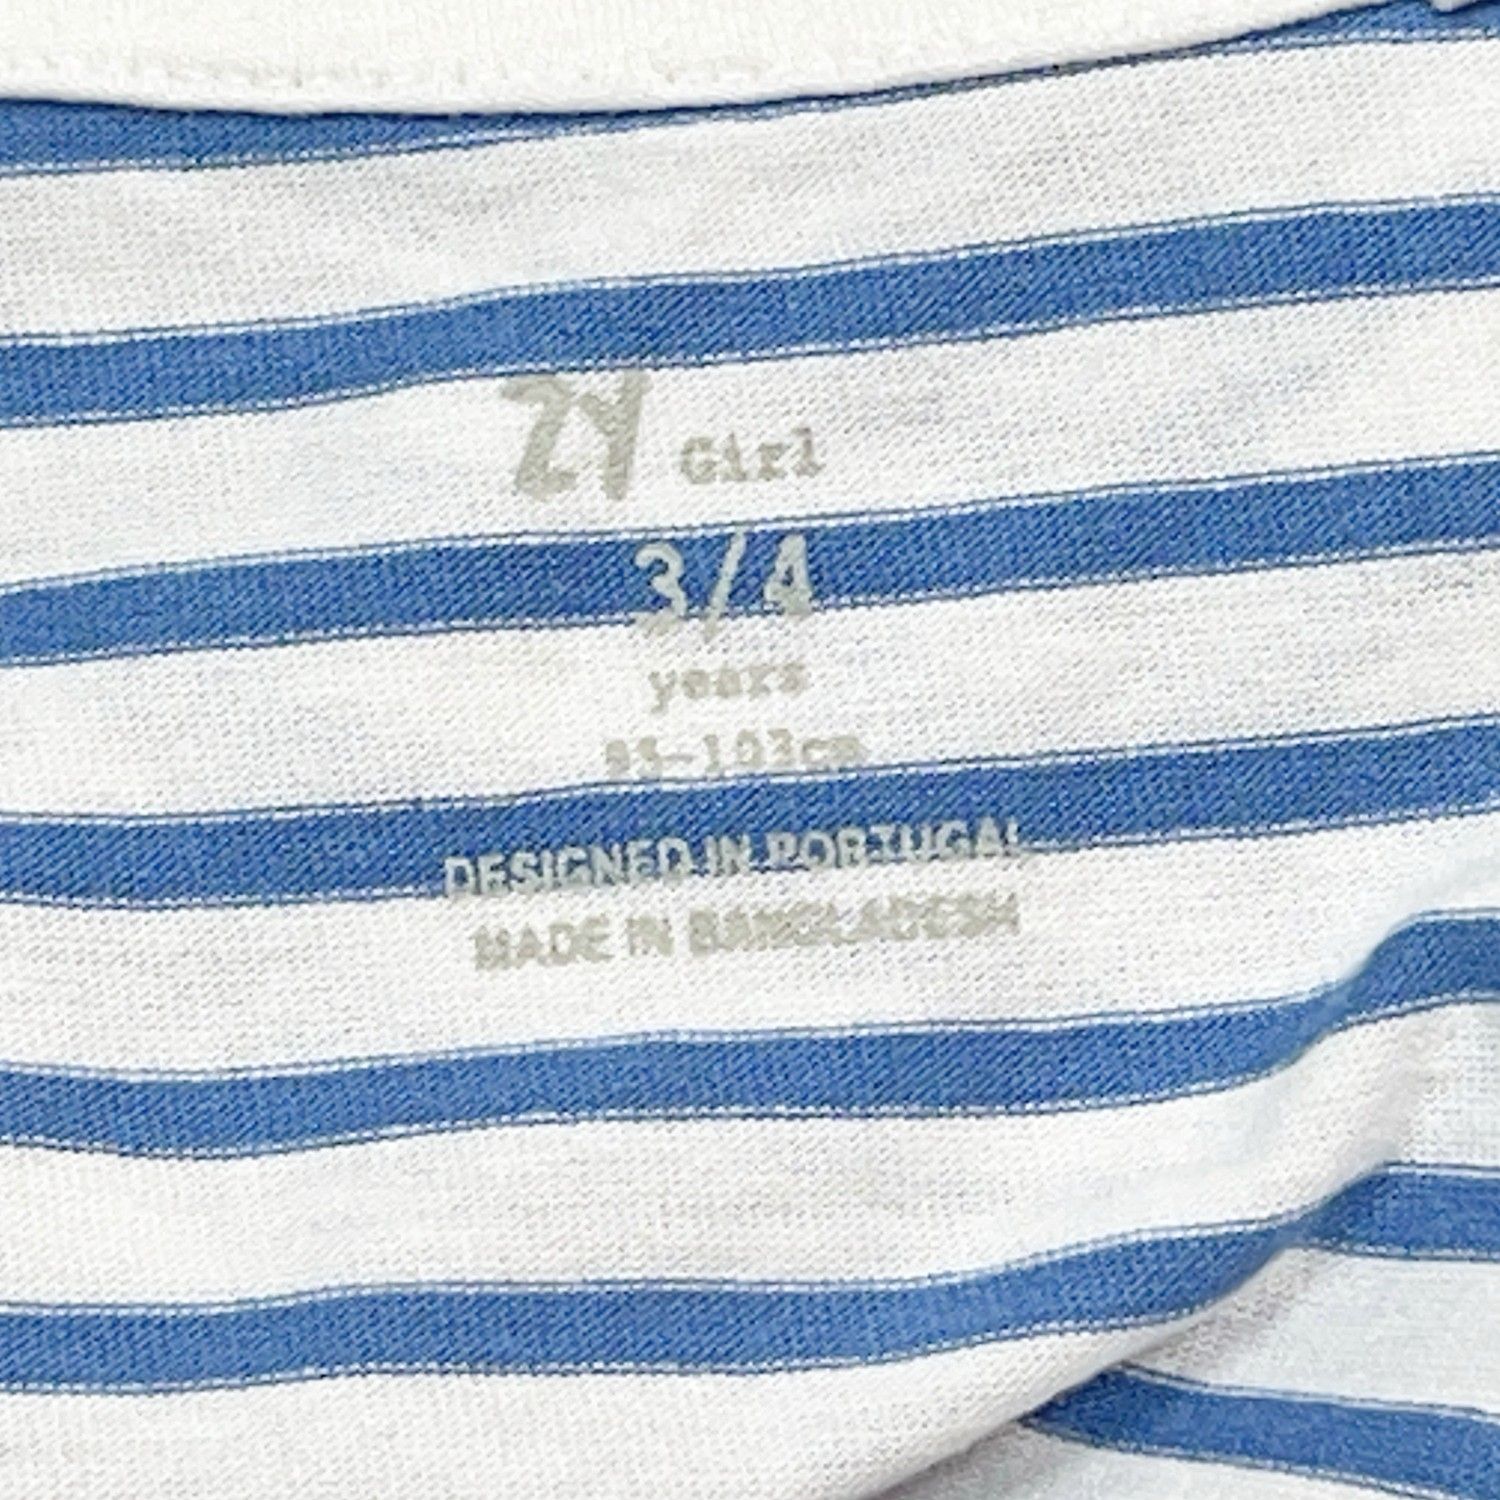 تی شرت آستین کوتاه دخترانه زد وای مدل 7045224 بسته 2 عددی -  - 6